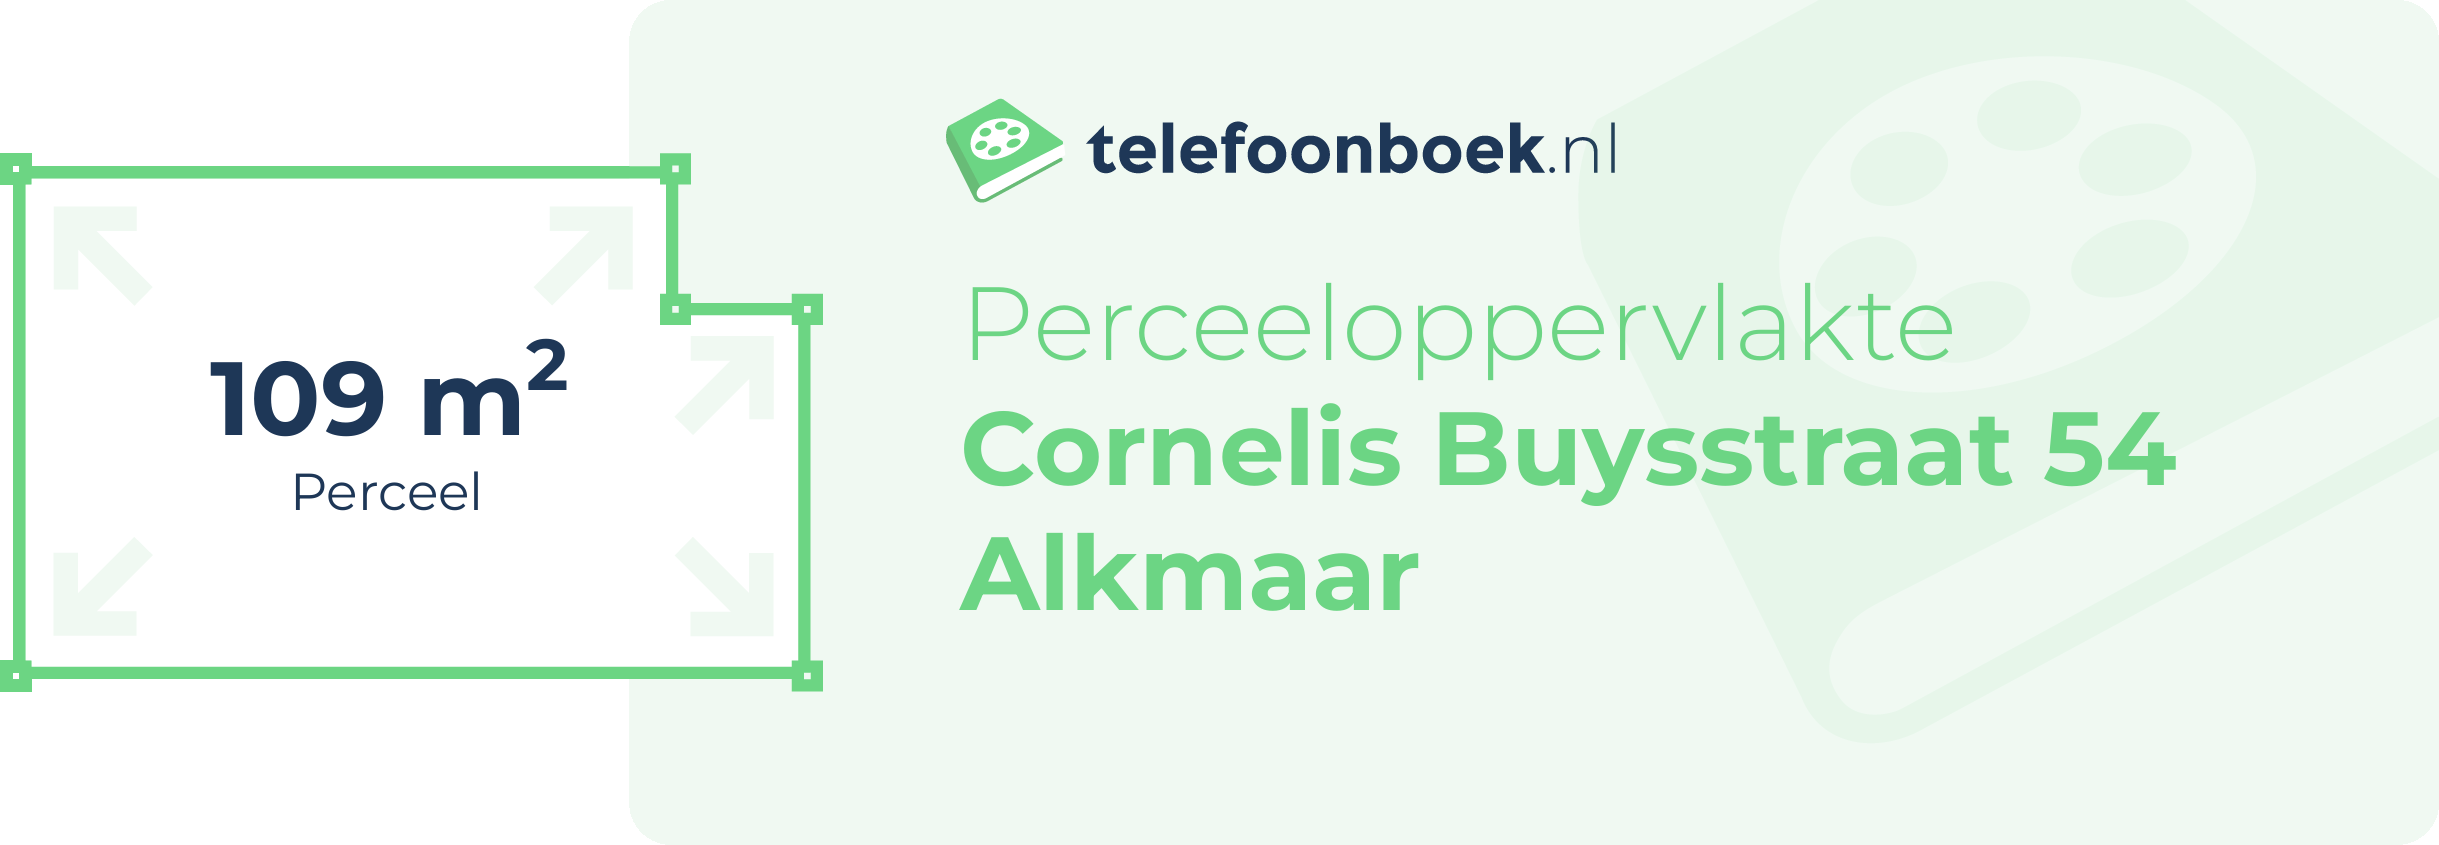 Perceeloppervlakte Cornelis Buysstraat 54 Alkmaar